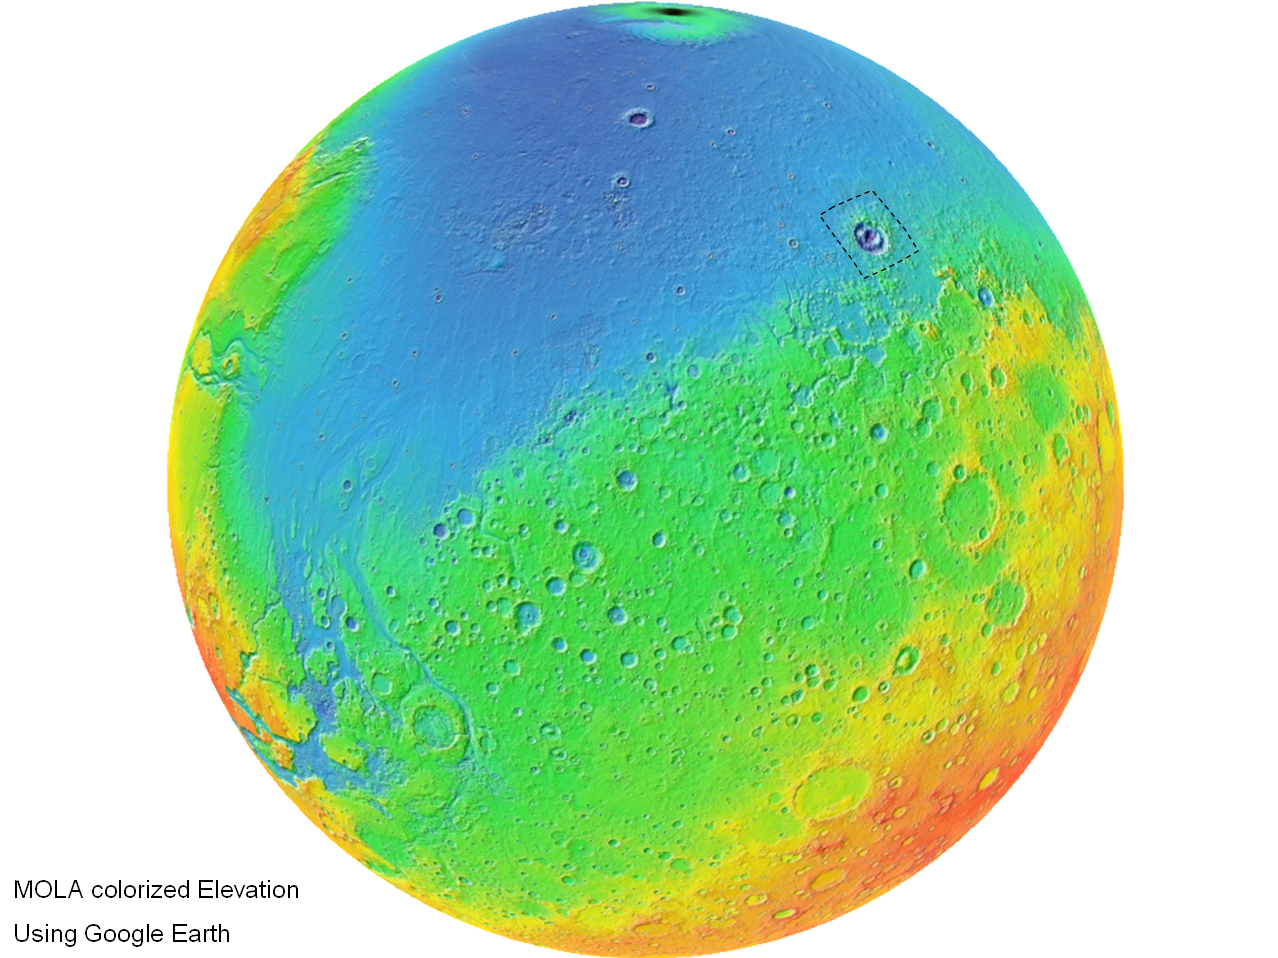 Høydekart over Mars. Blått er lavland. Lyot-krateret er avmerket. Foto: MOLA Science Team, NASA